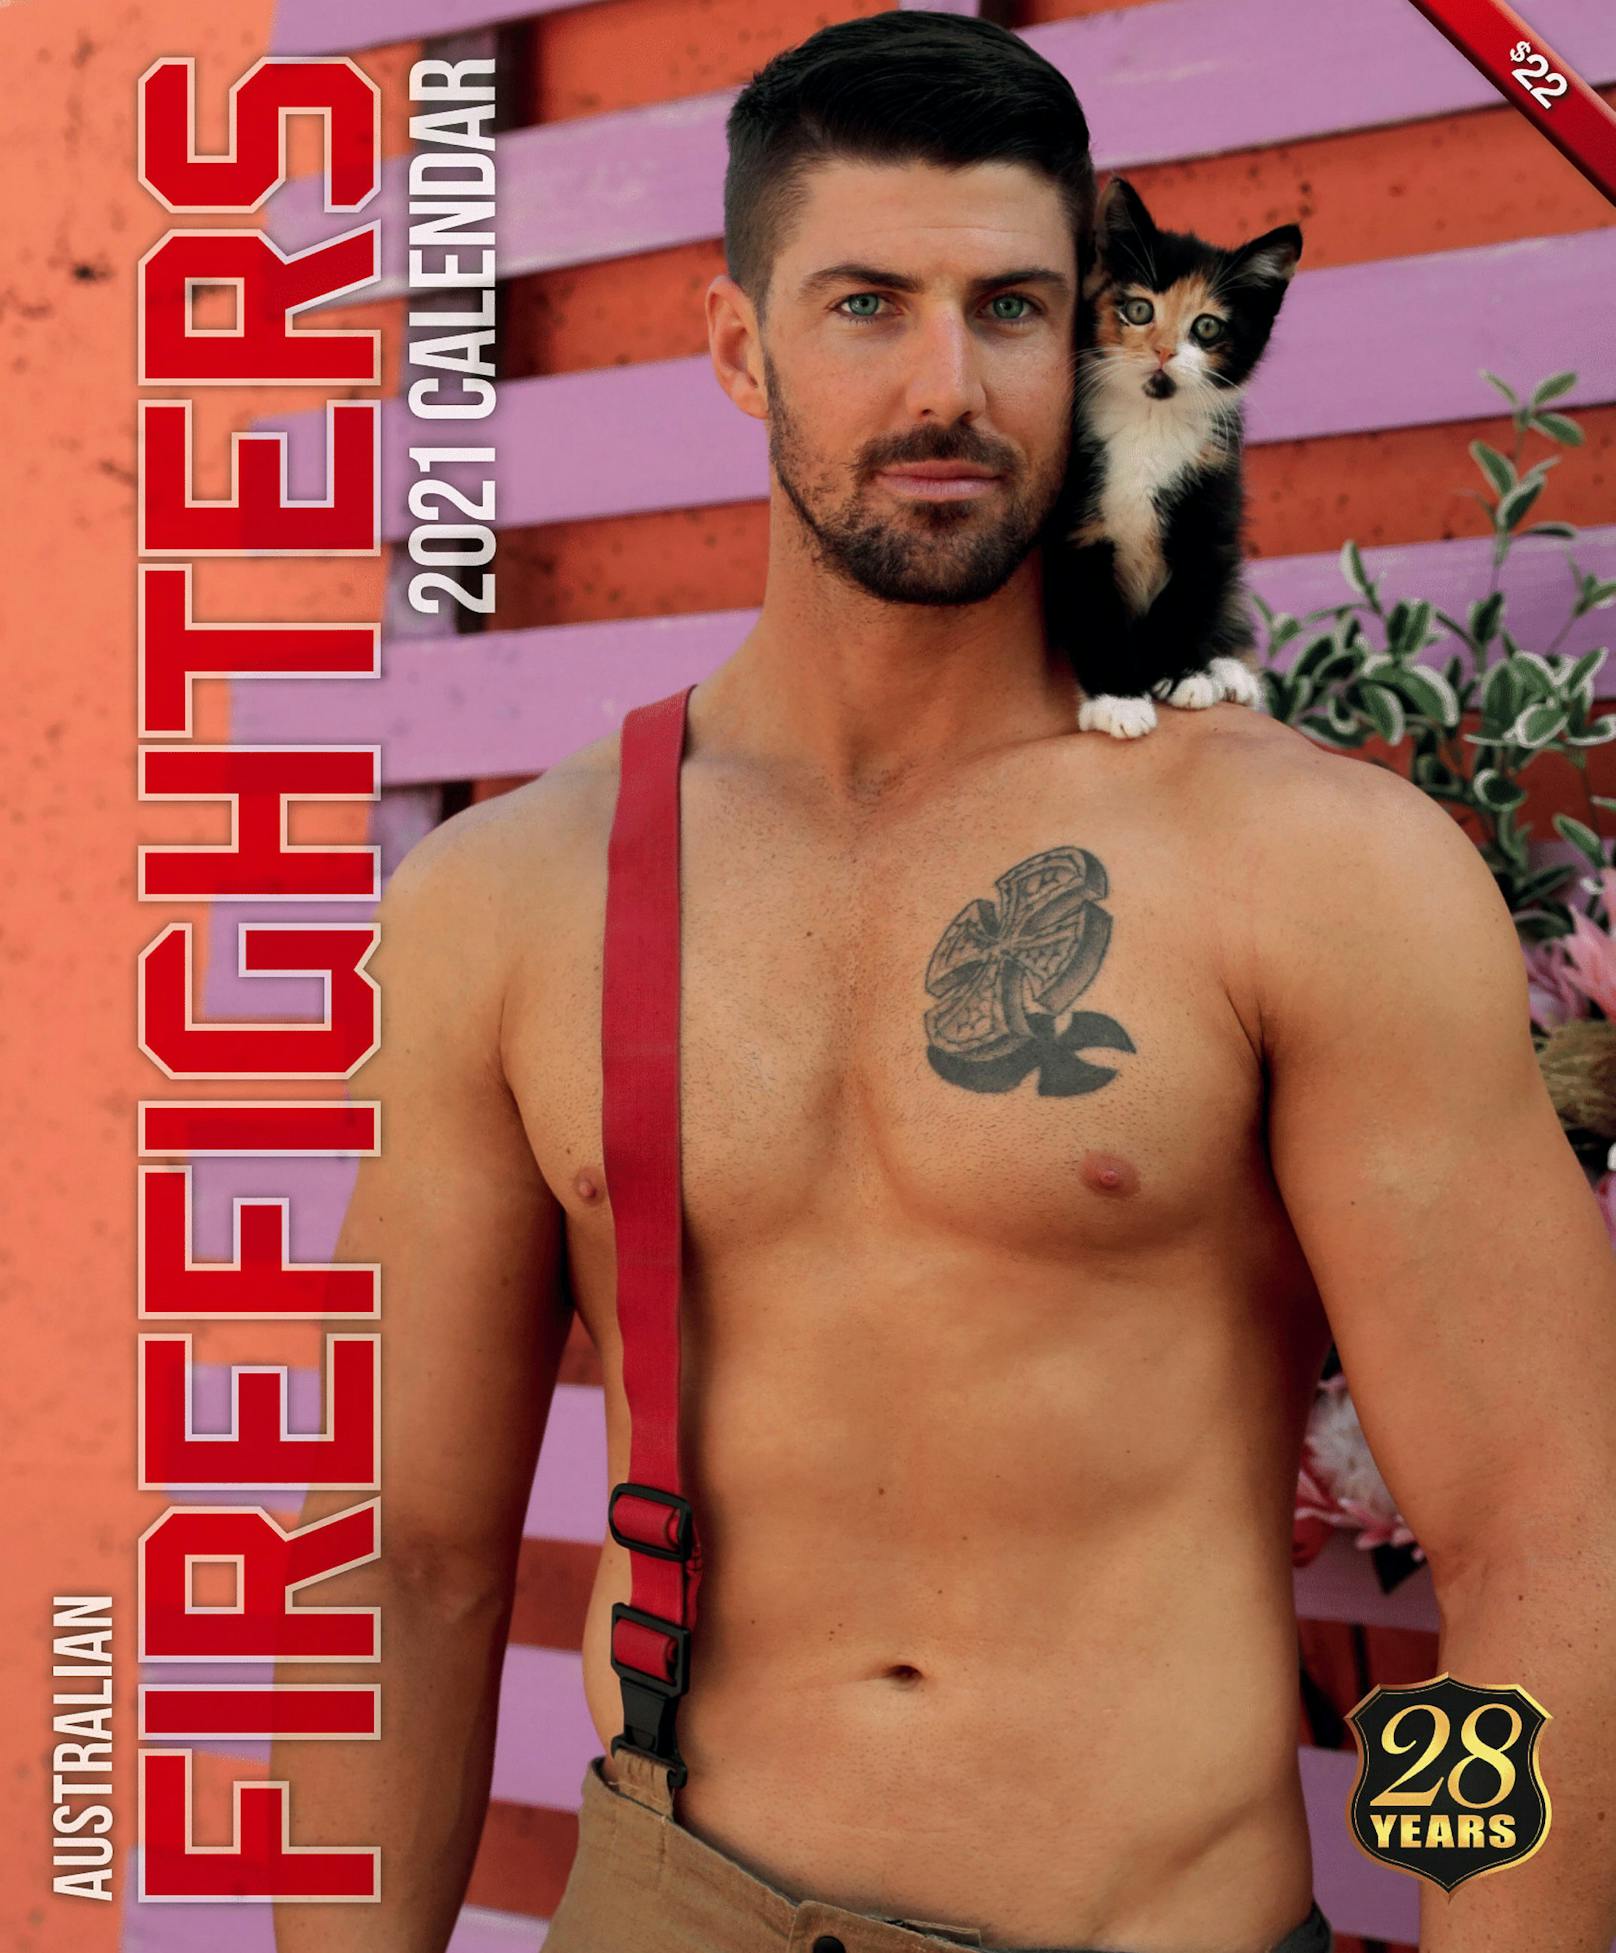 Auch Katzen fühlen sich bei den starken Feuerwehrmännern wohl. <br>